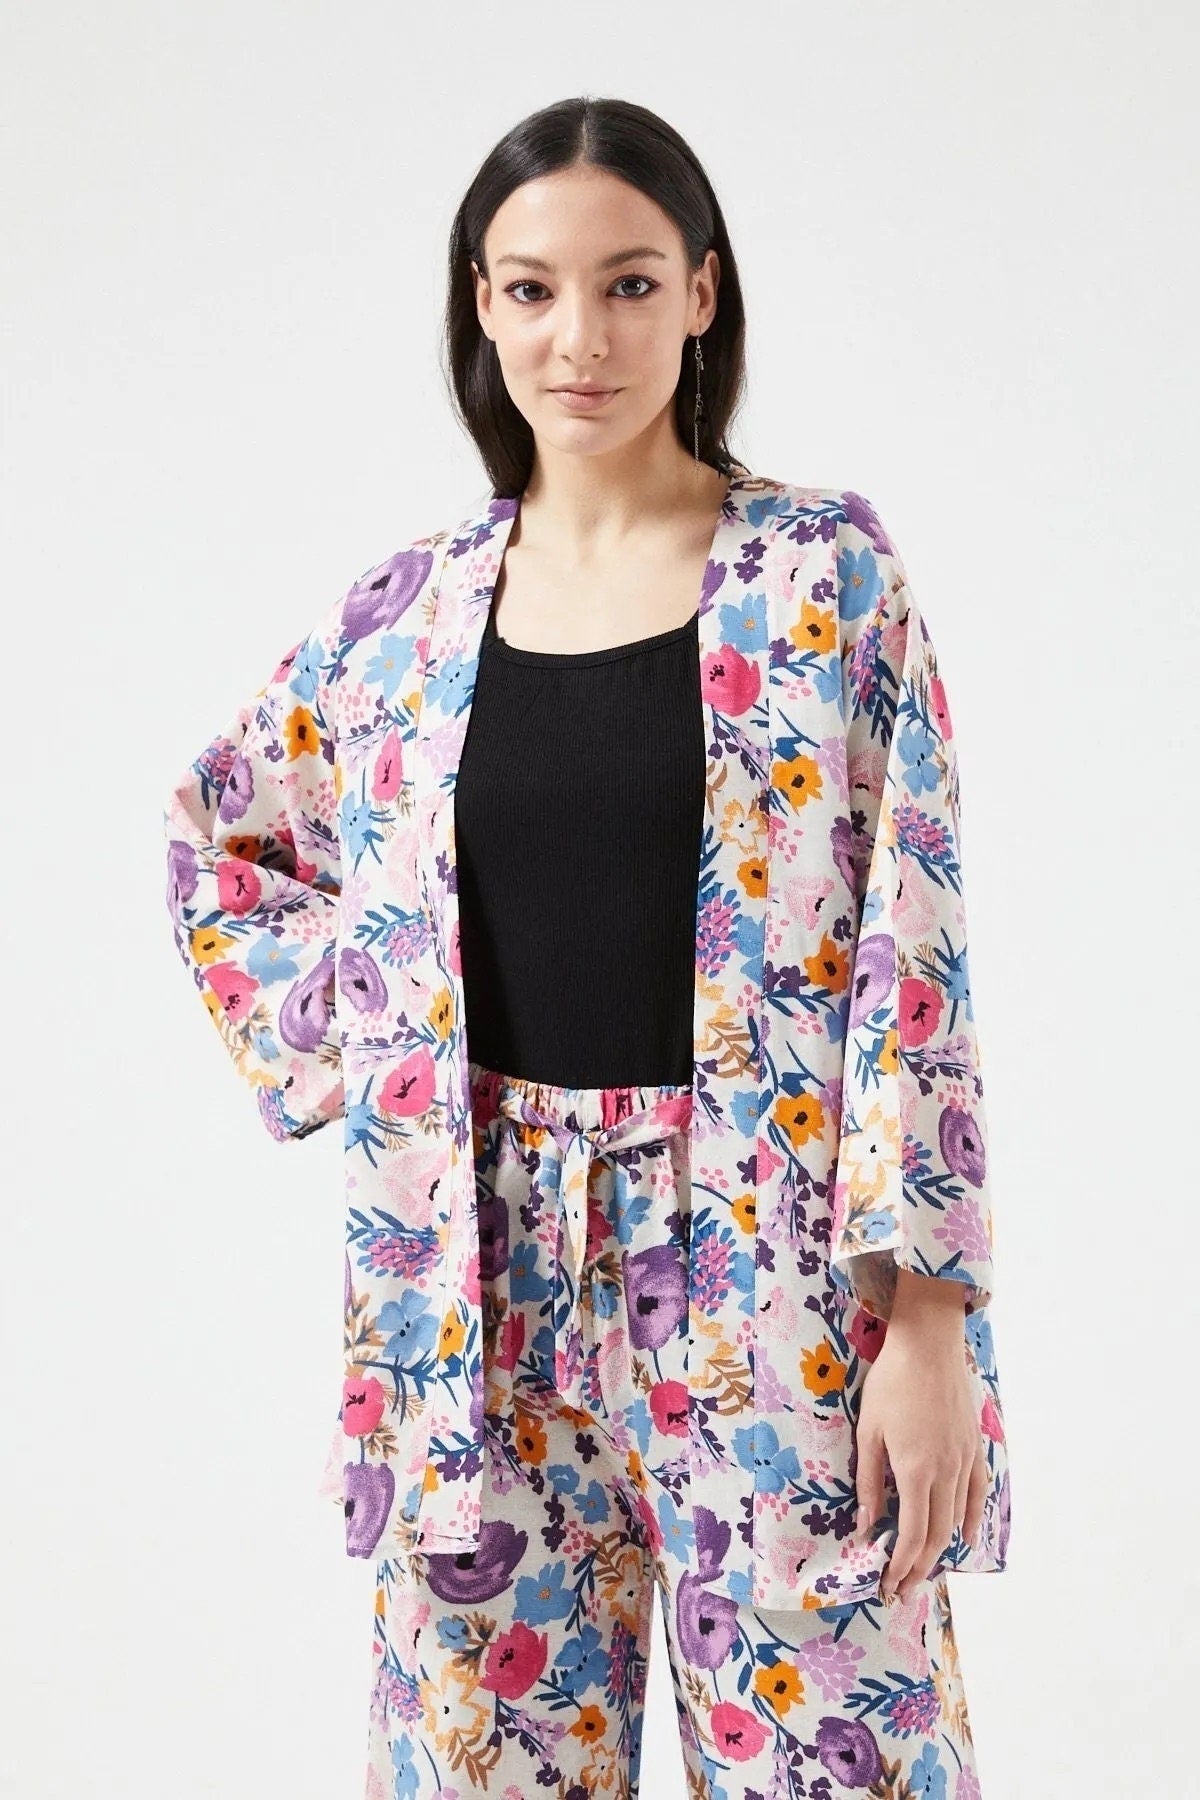 Colorful Floral Print Linen Kimono Swim Cover Up